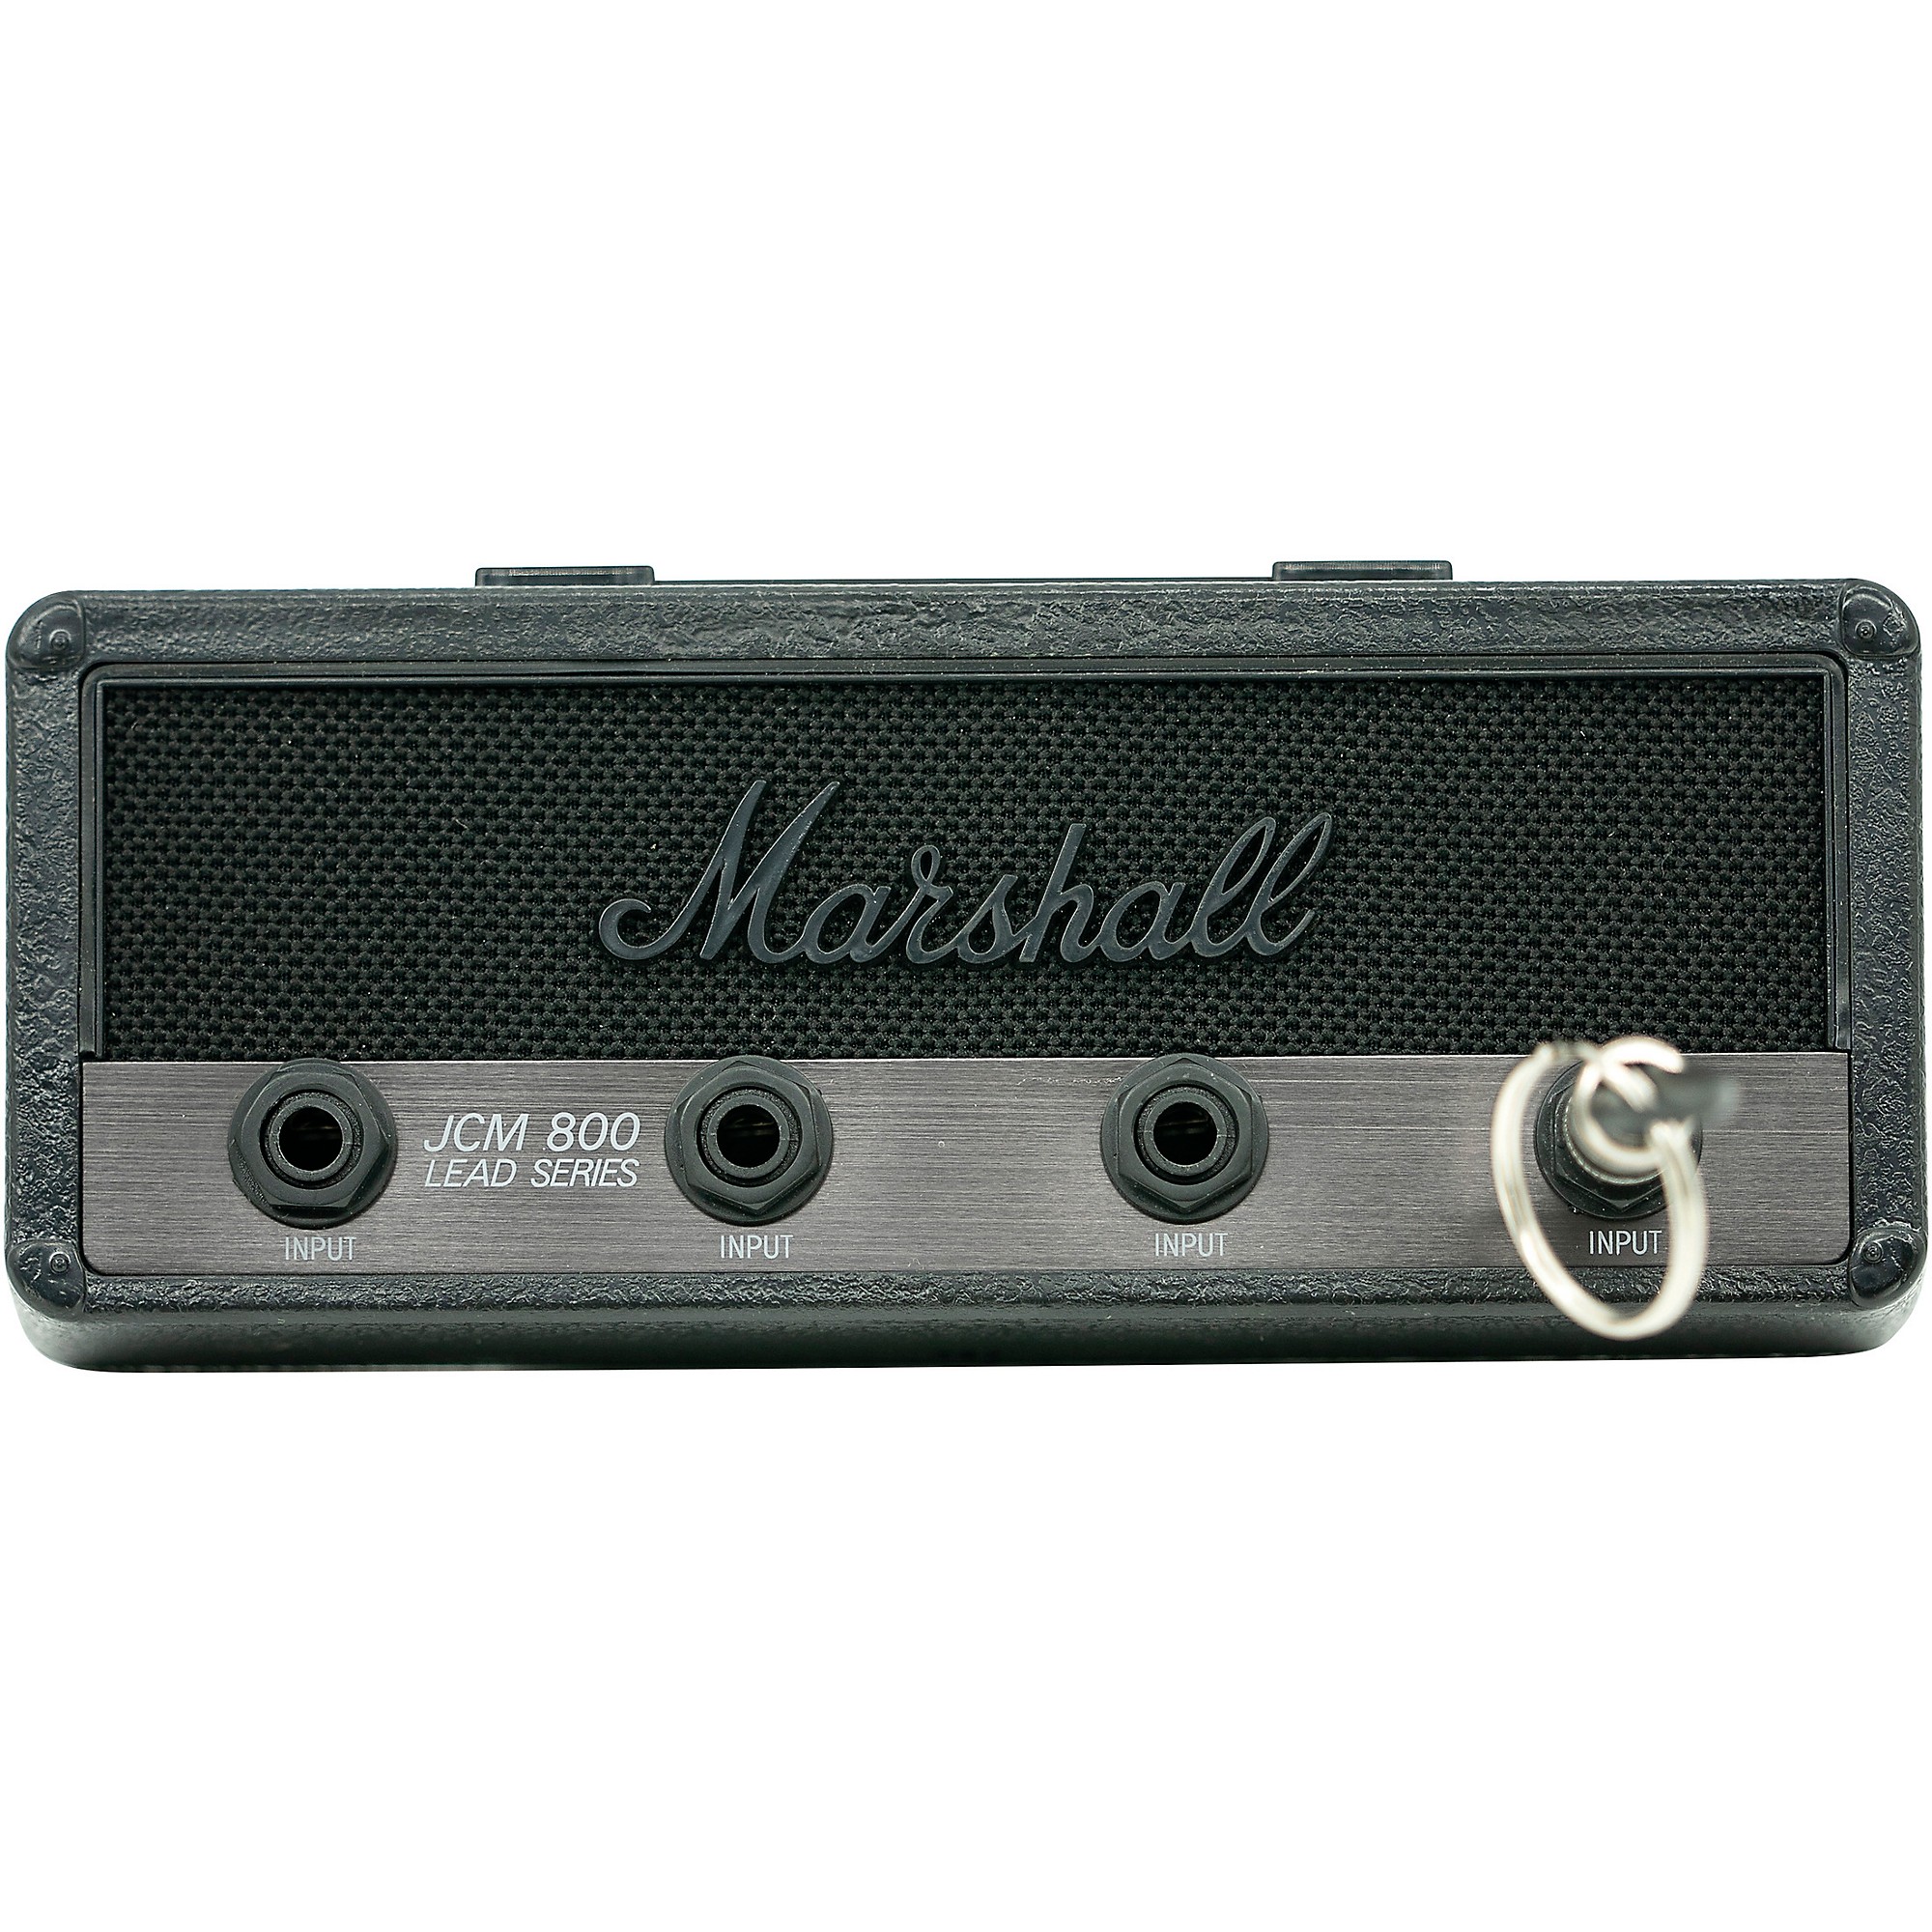 Marshall JCM 800 Jack Rack - Muslands Music Shop